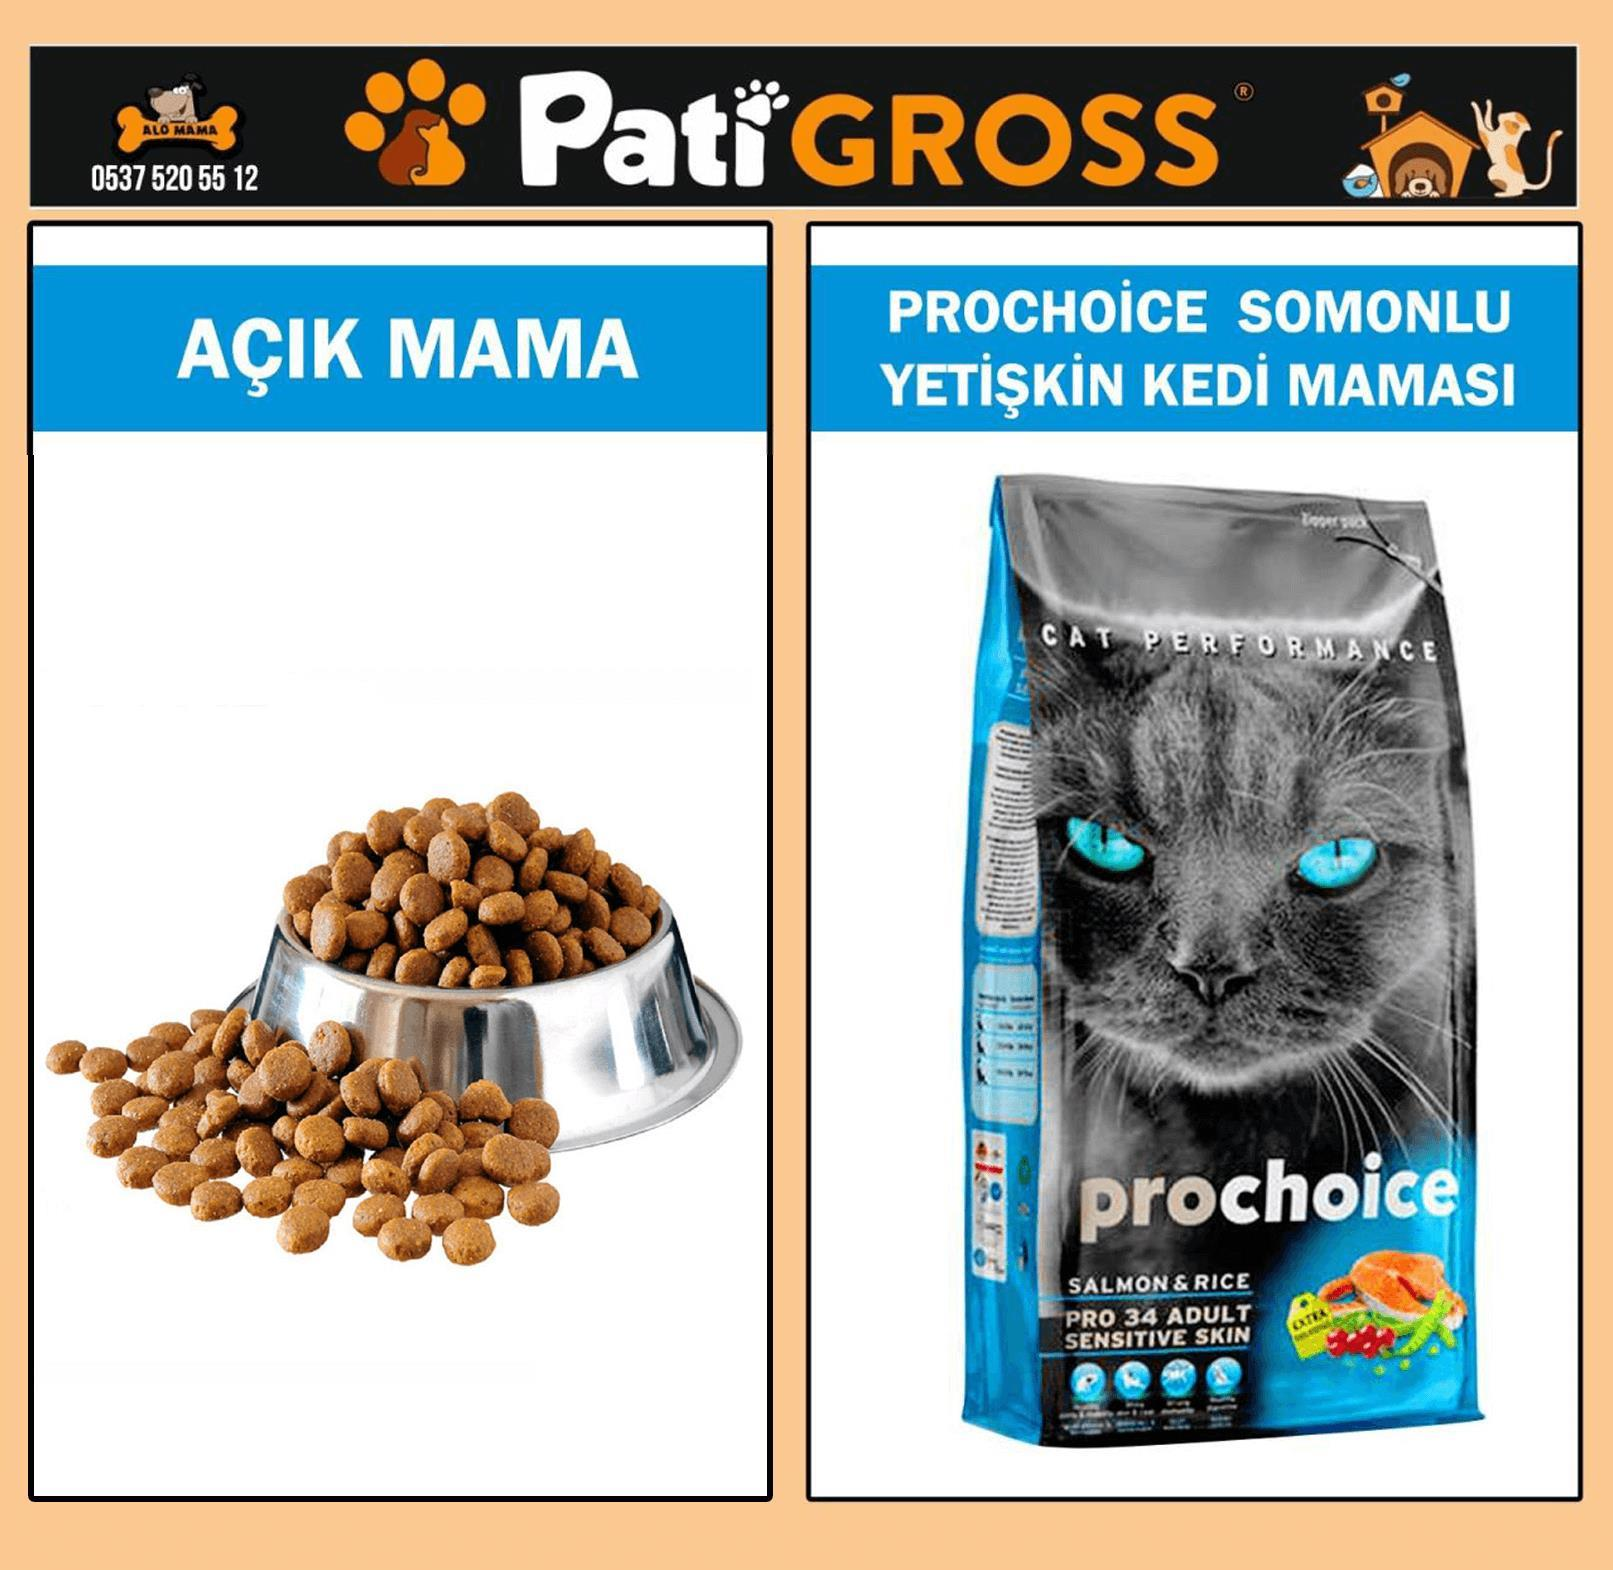 ProChoice Somon Ve Pirinçli Yetişkin Kedi Maması 1kg (AÇIK)